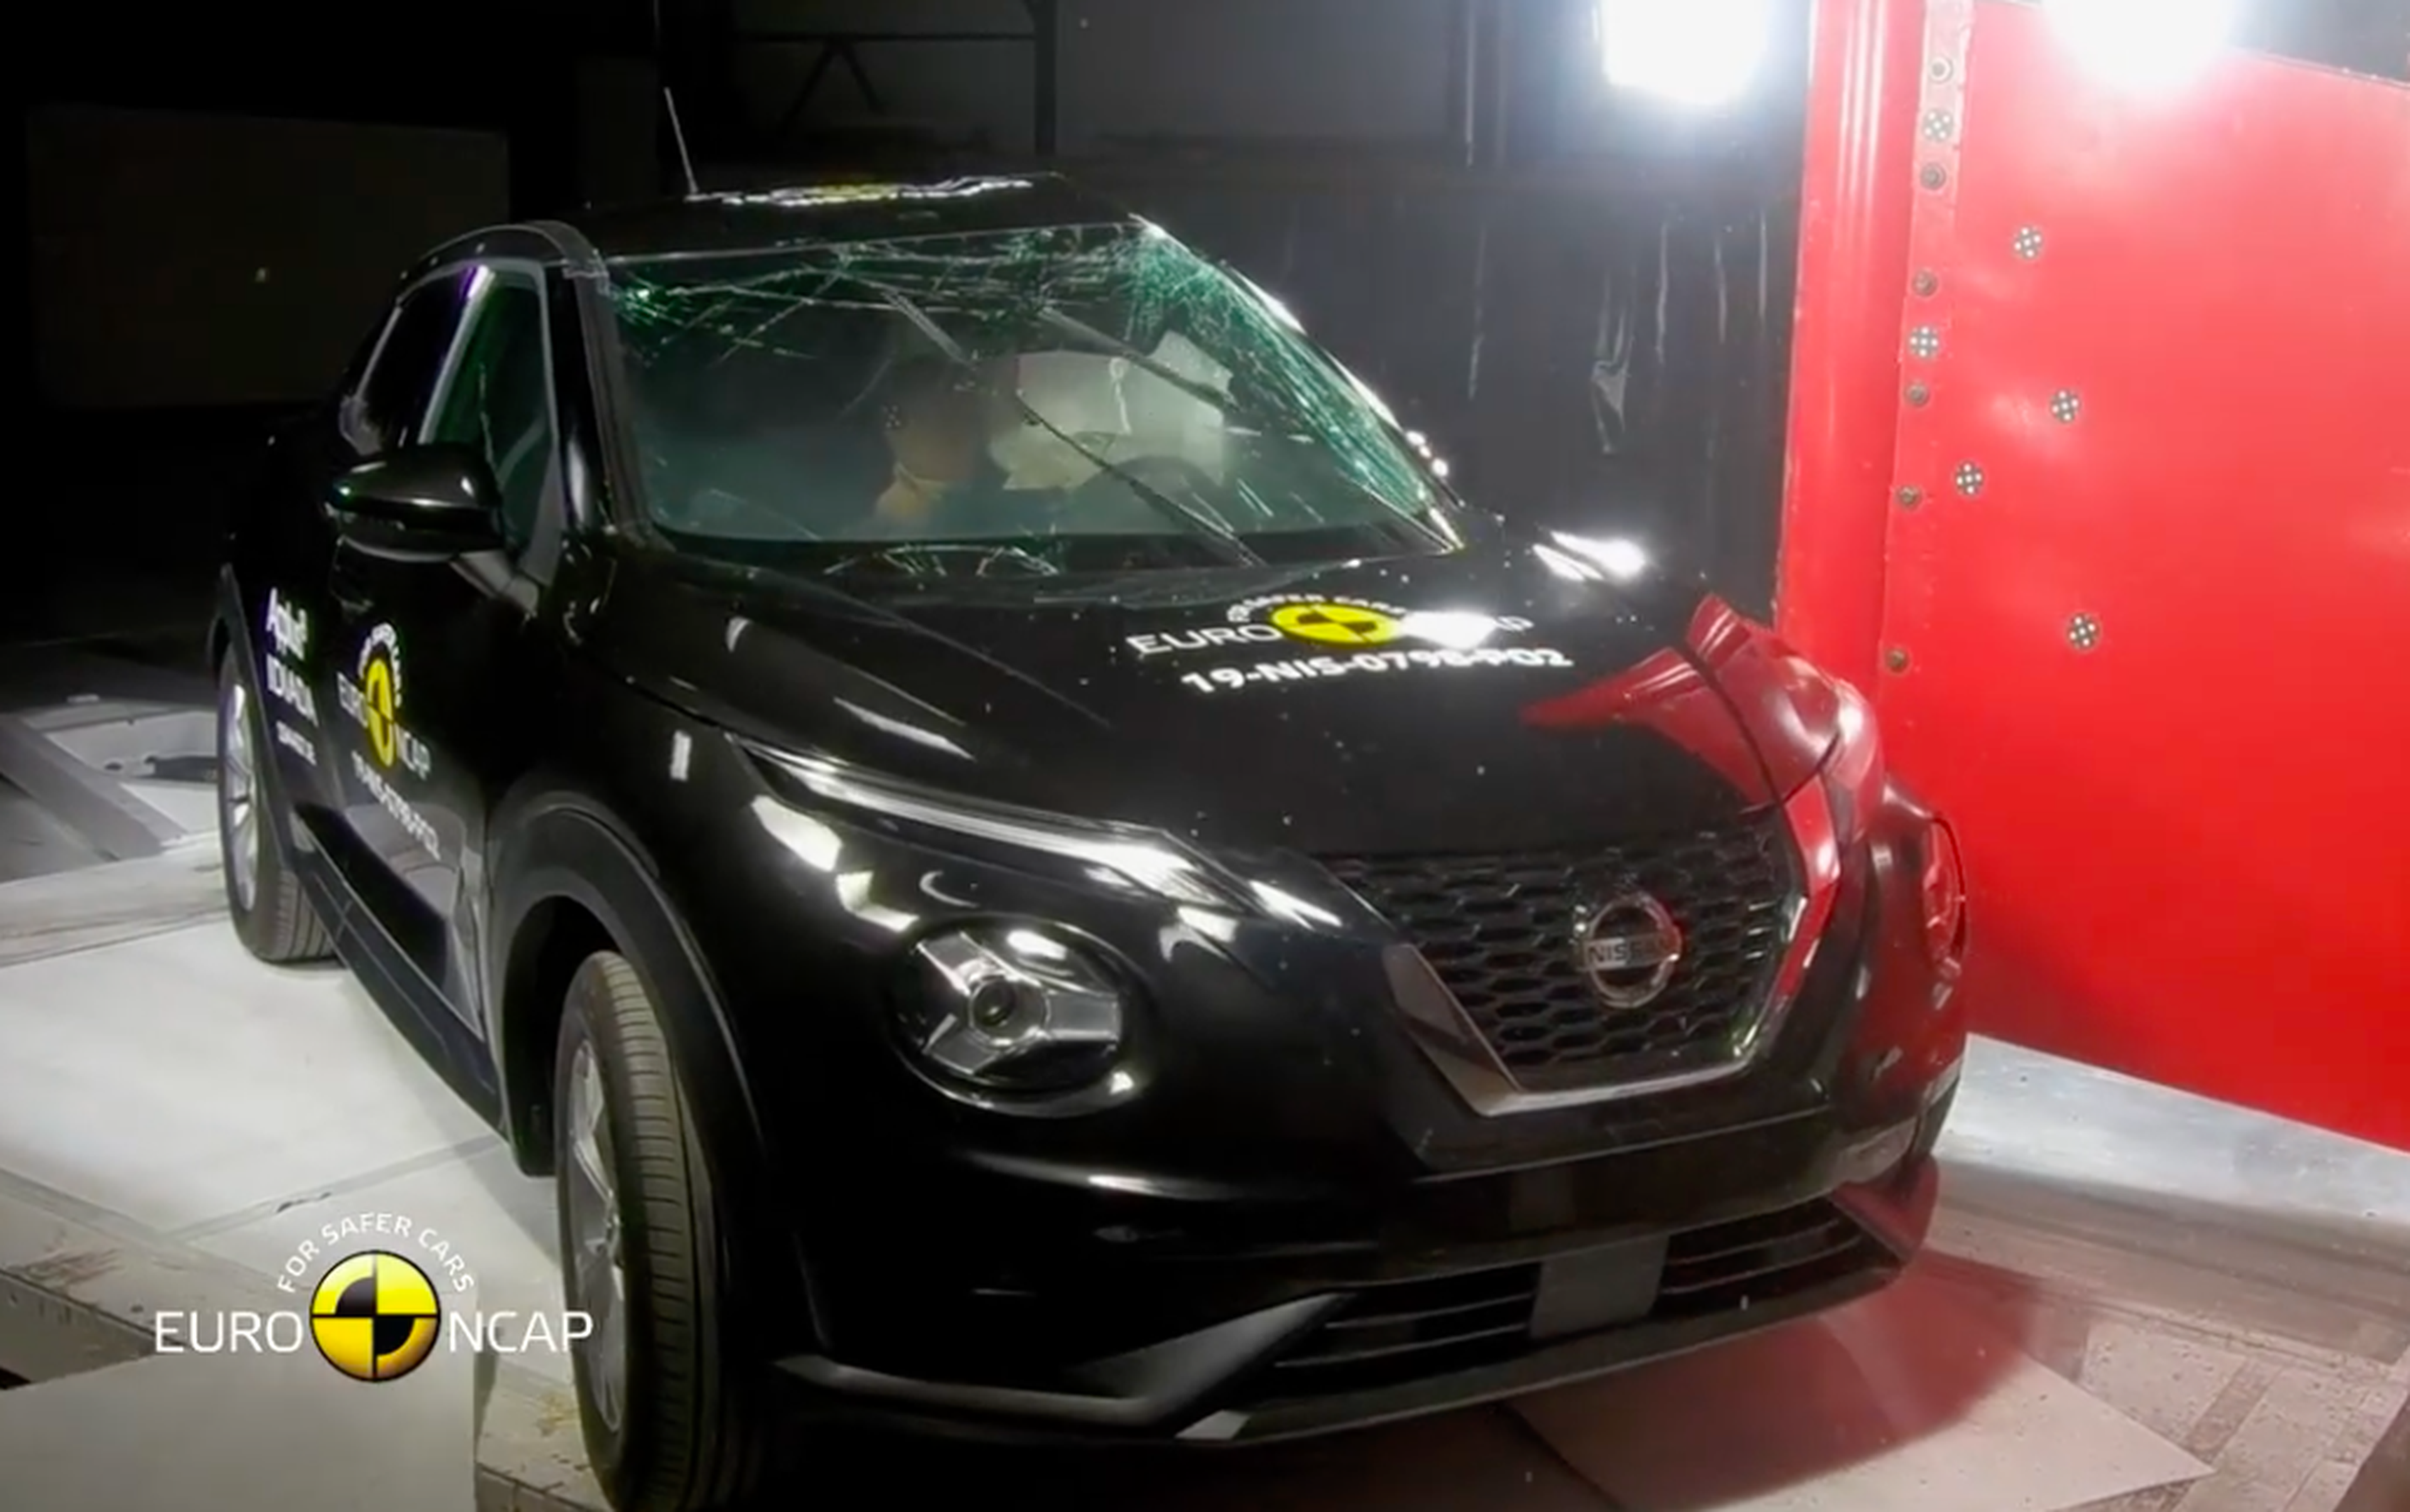 VÍDEO: Nissan Juke 2020, ¿es seguro? Aquí tienes la prueba